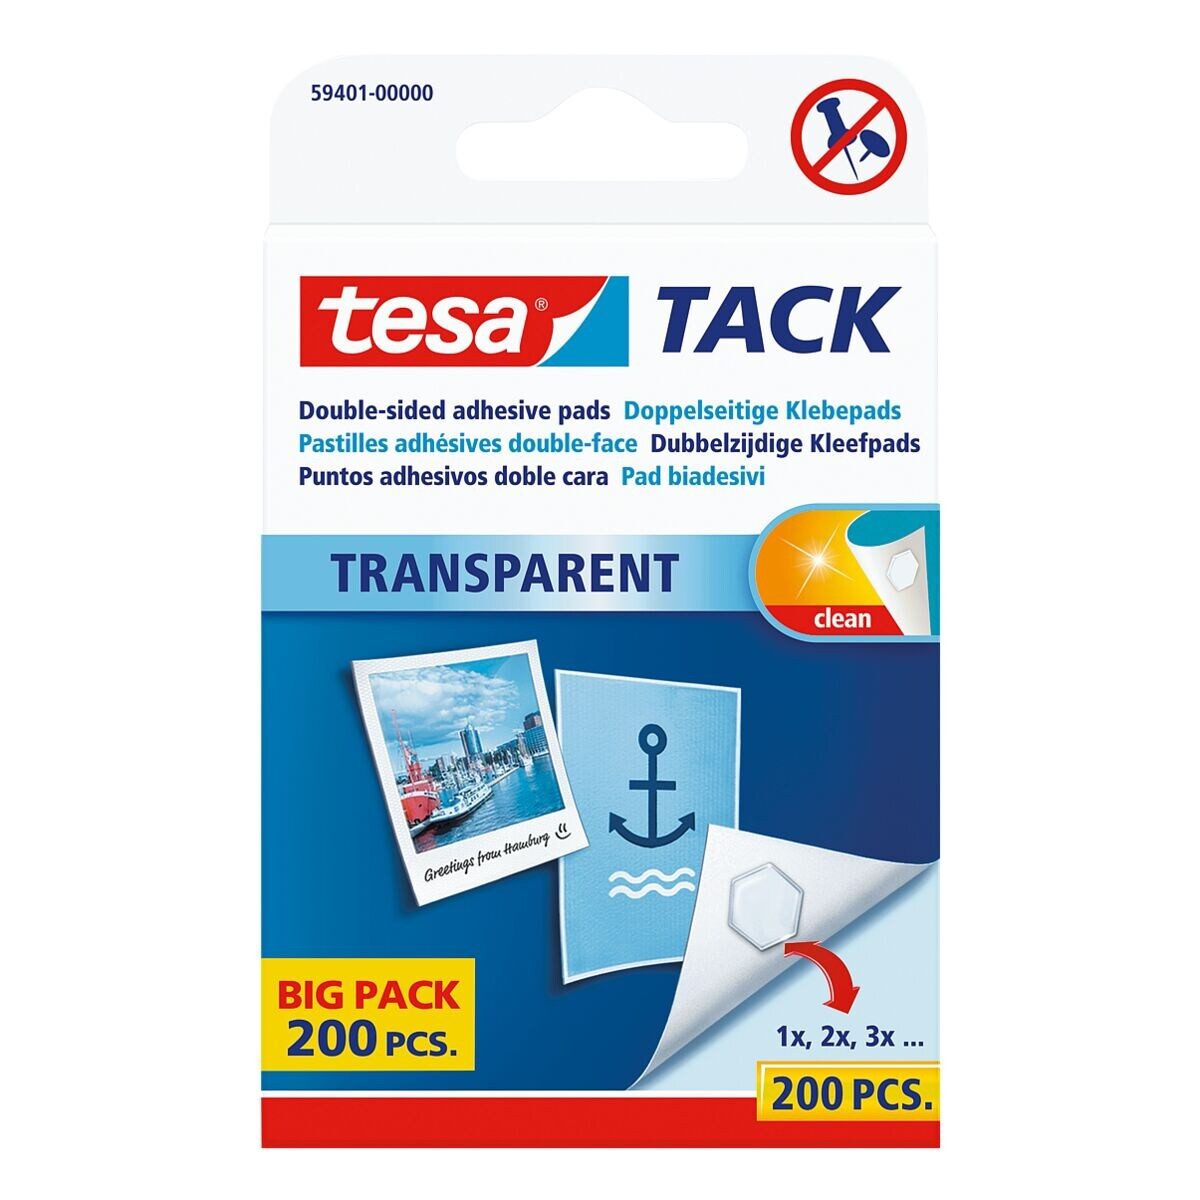 tesa Klebepad TACK Big Pack (200-St) wiederablösbar / wiederverwendbar, transparent und flach